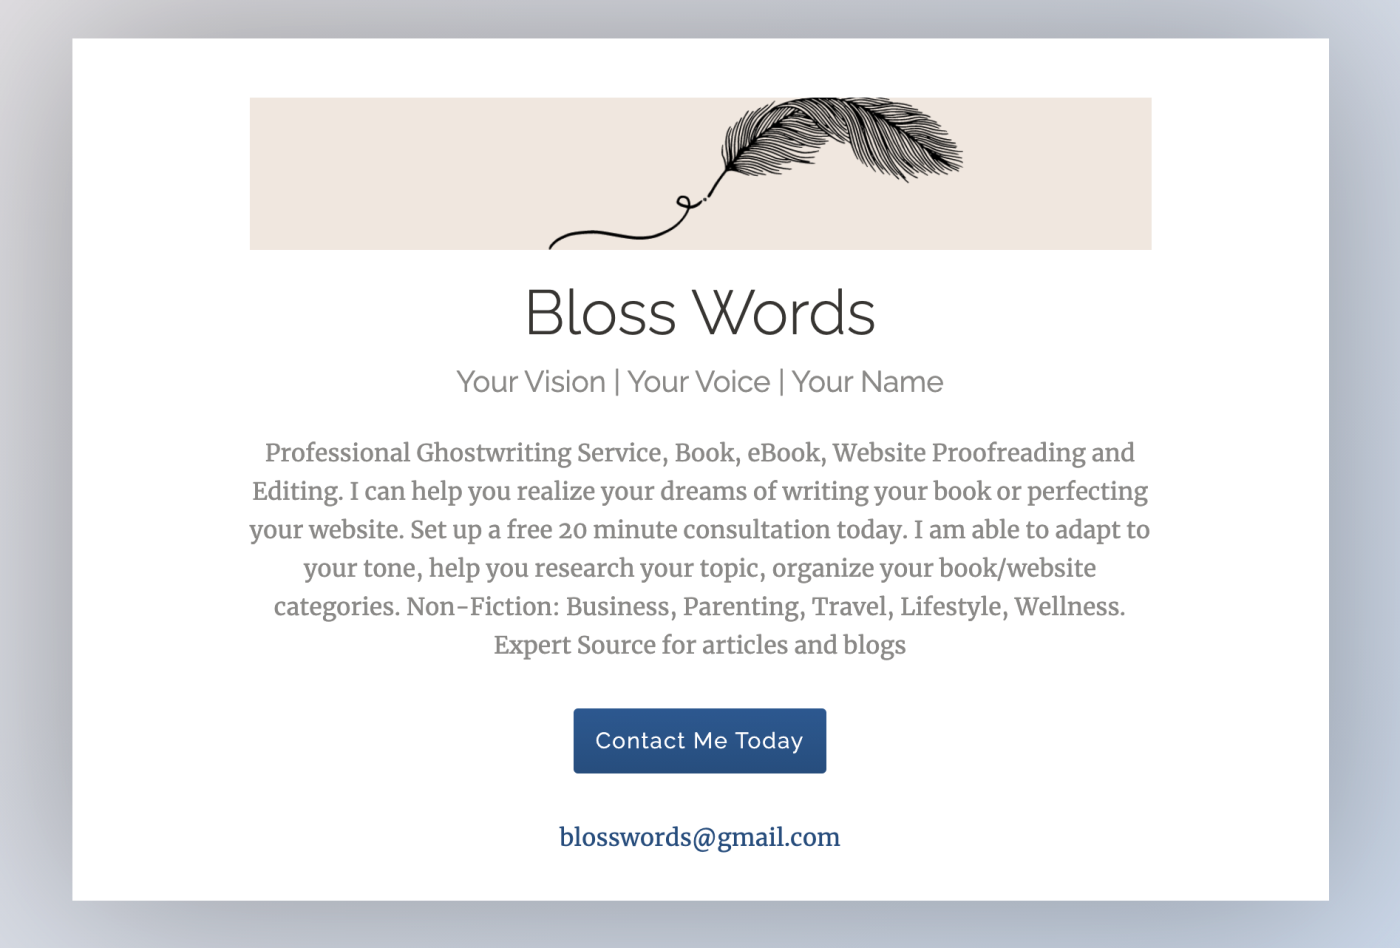 The Bloss Words website